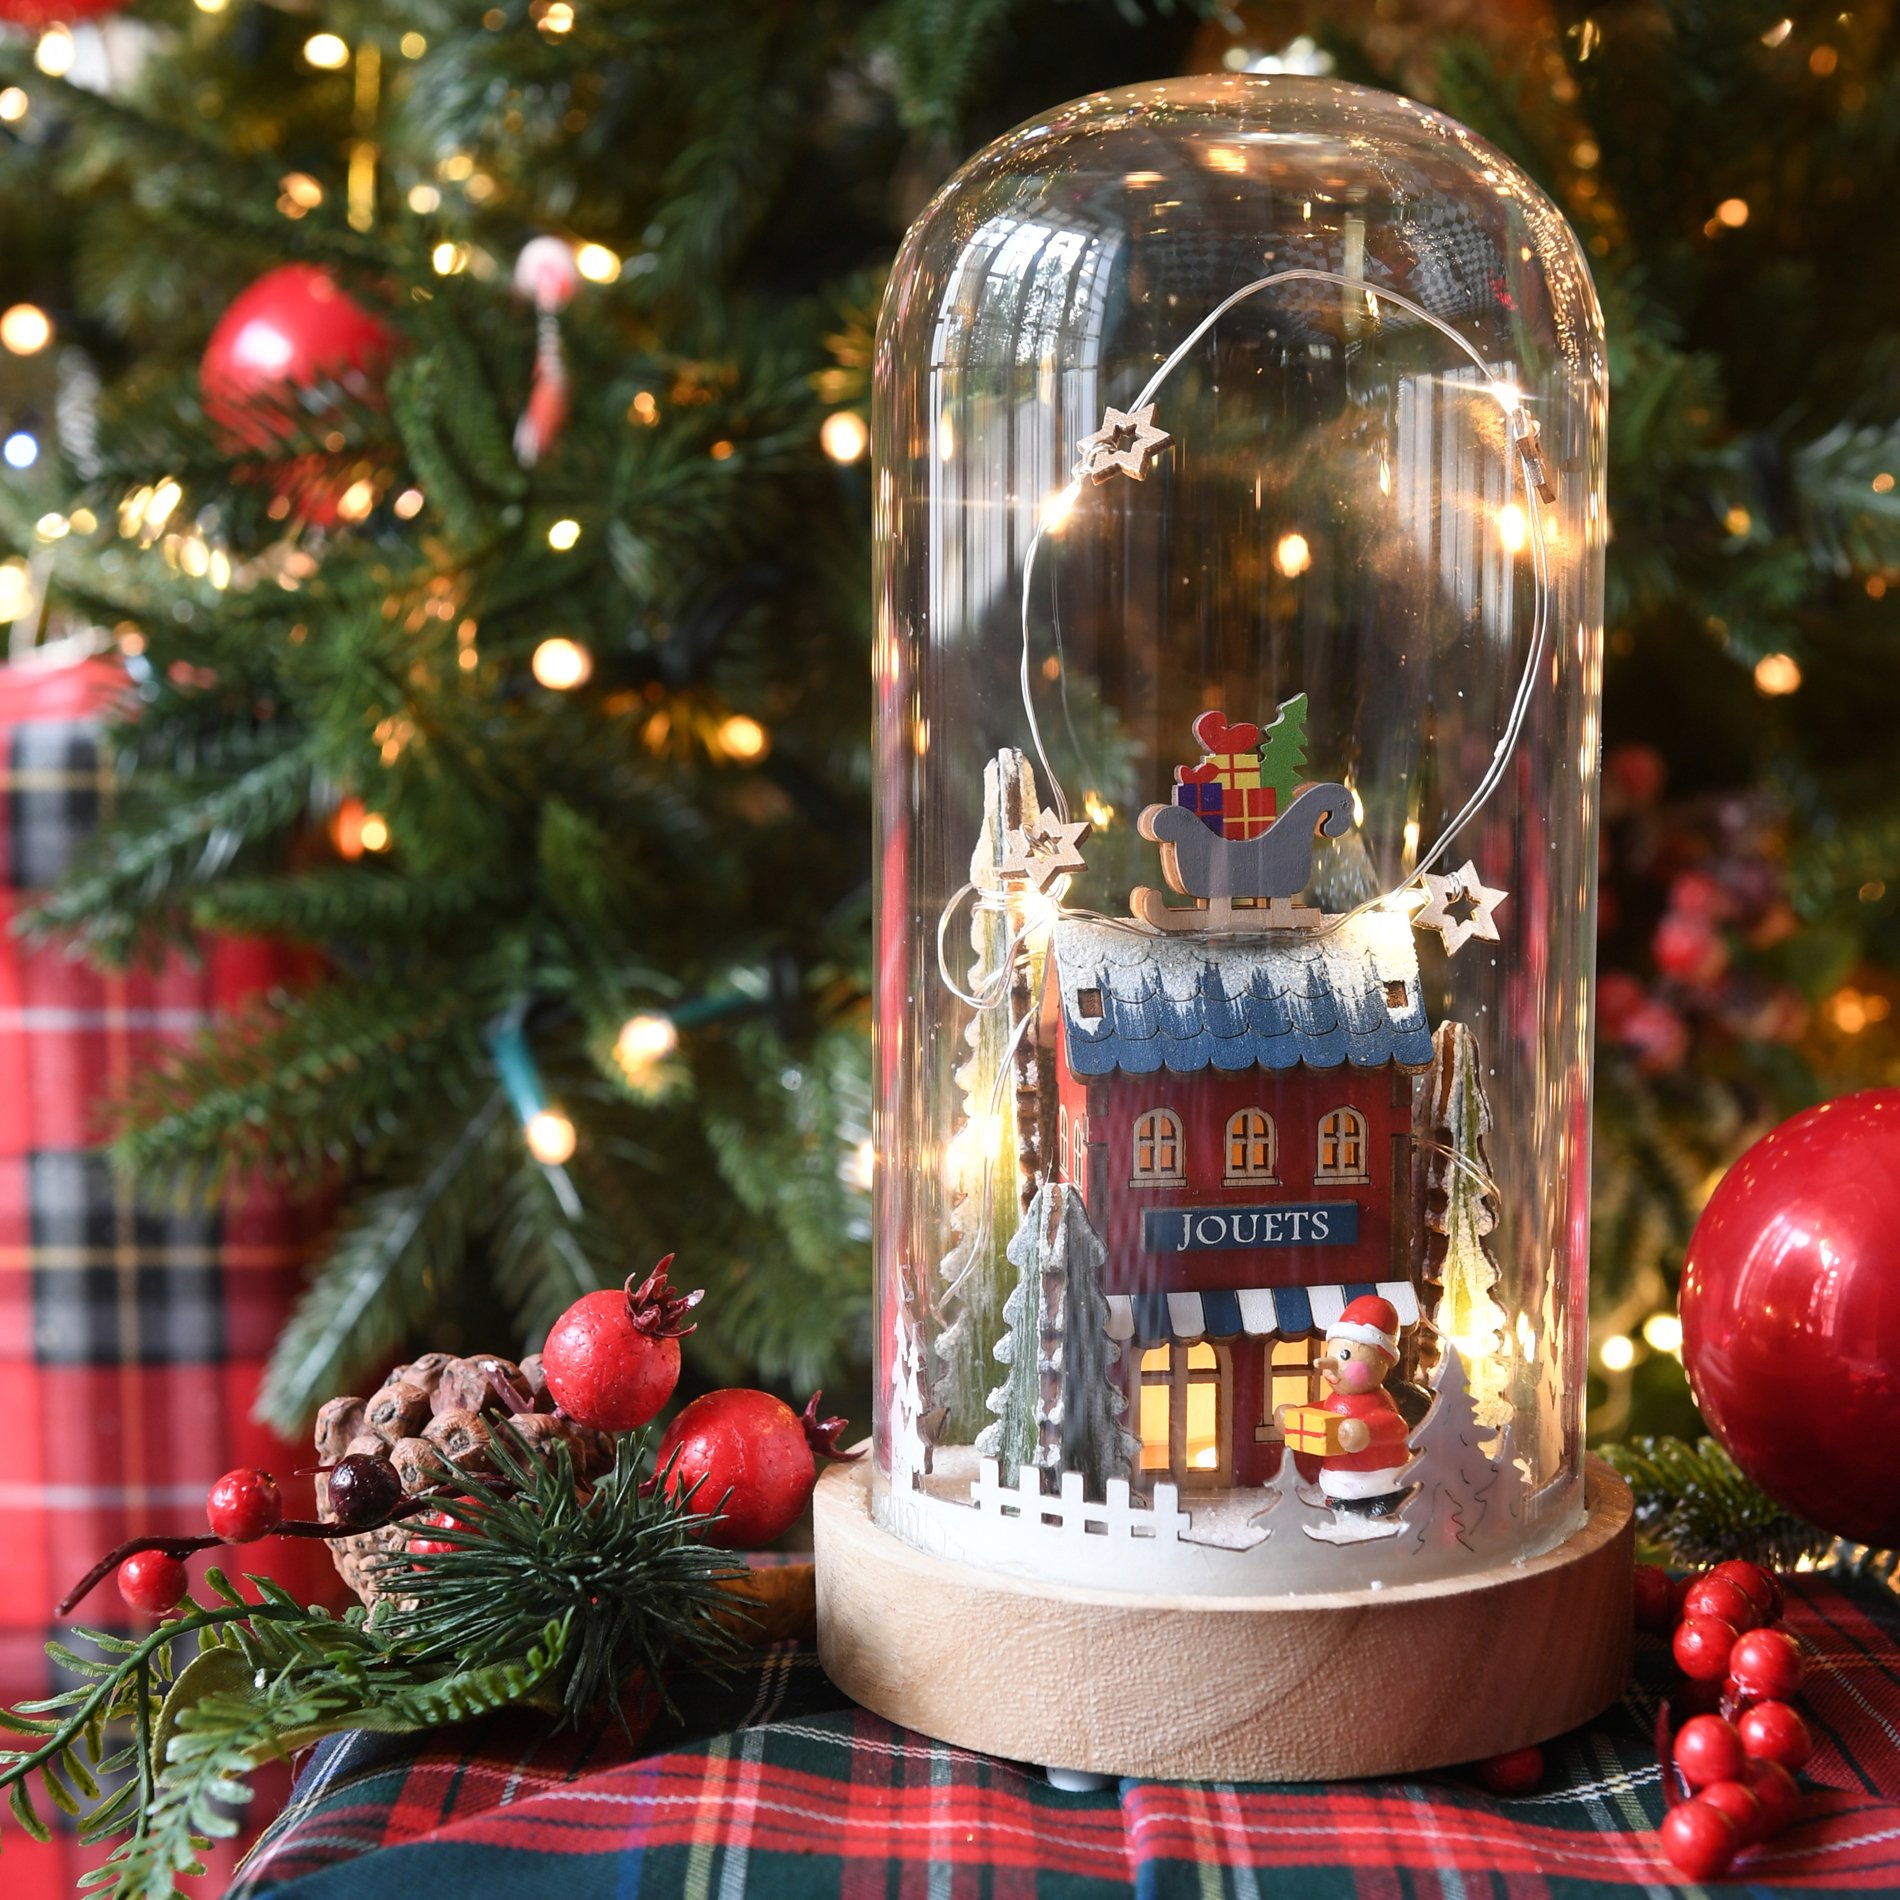 Vente chaude pour décoration de fête de Noël mini cadeau arbre de Noël 5#  6#